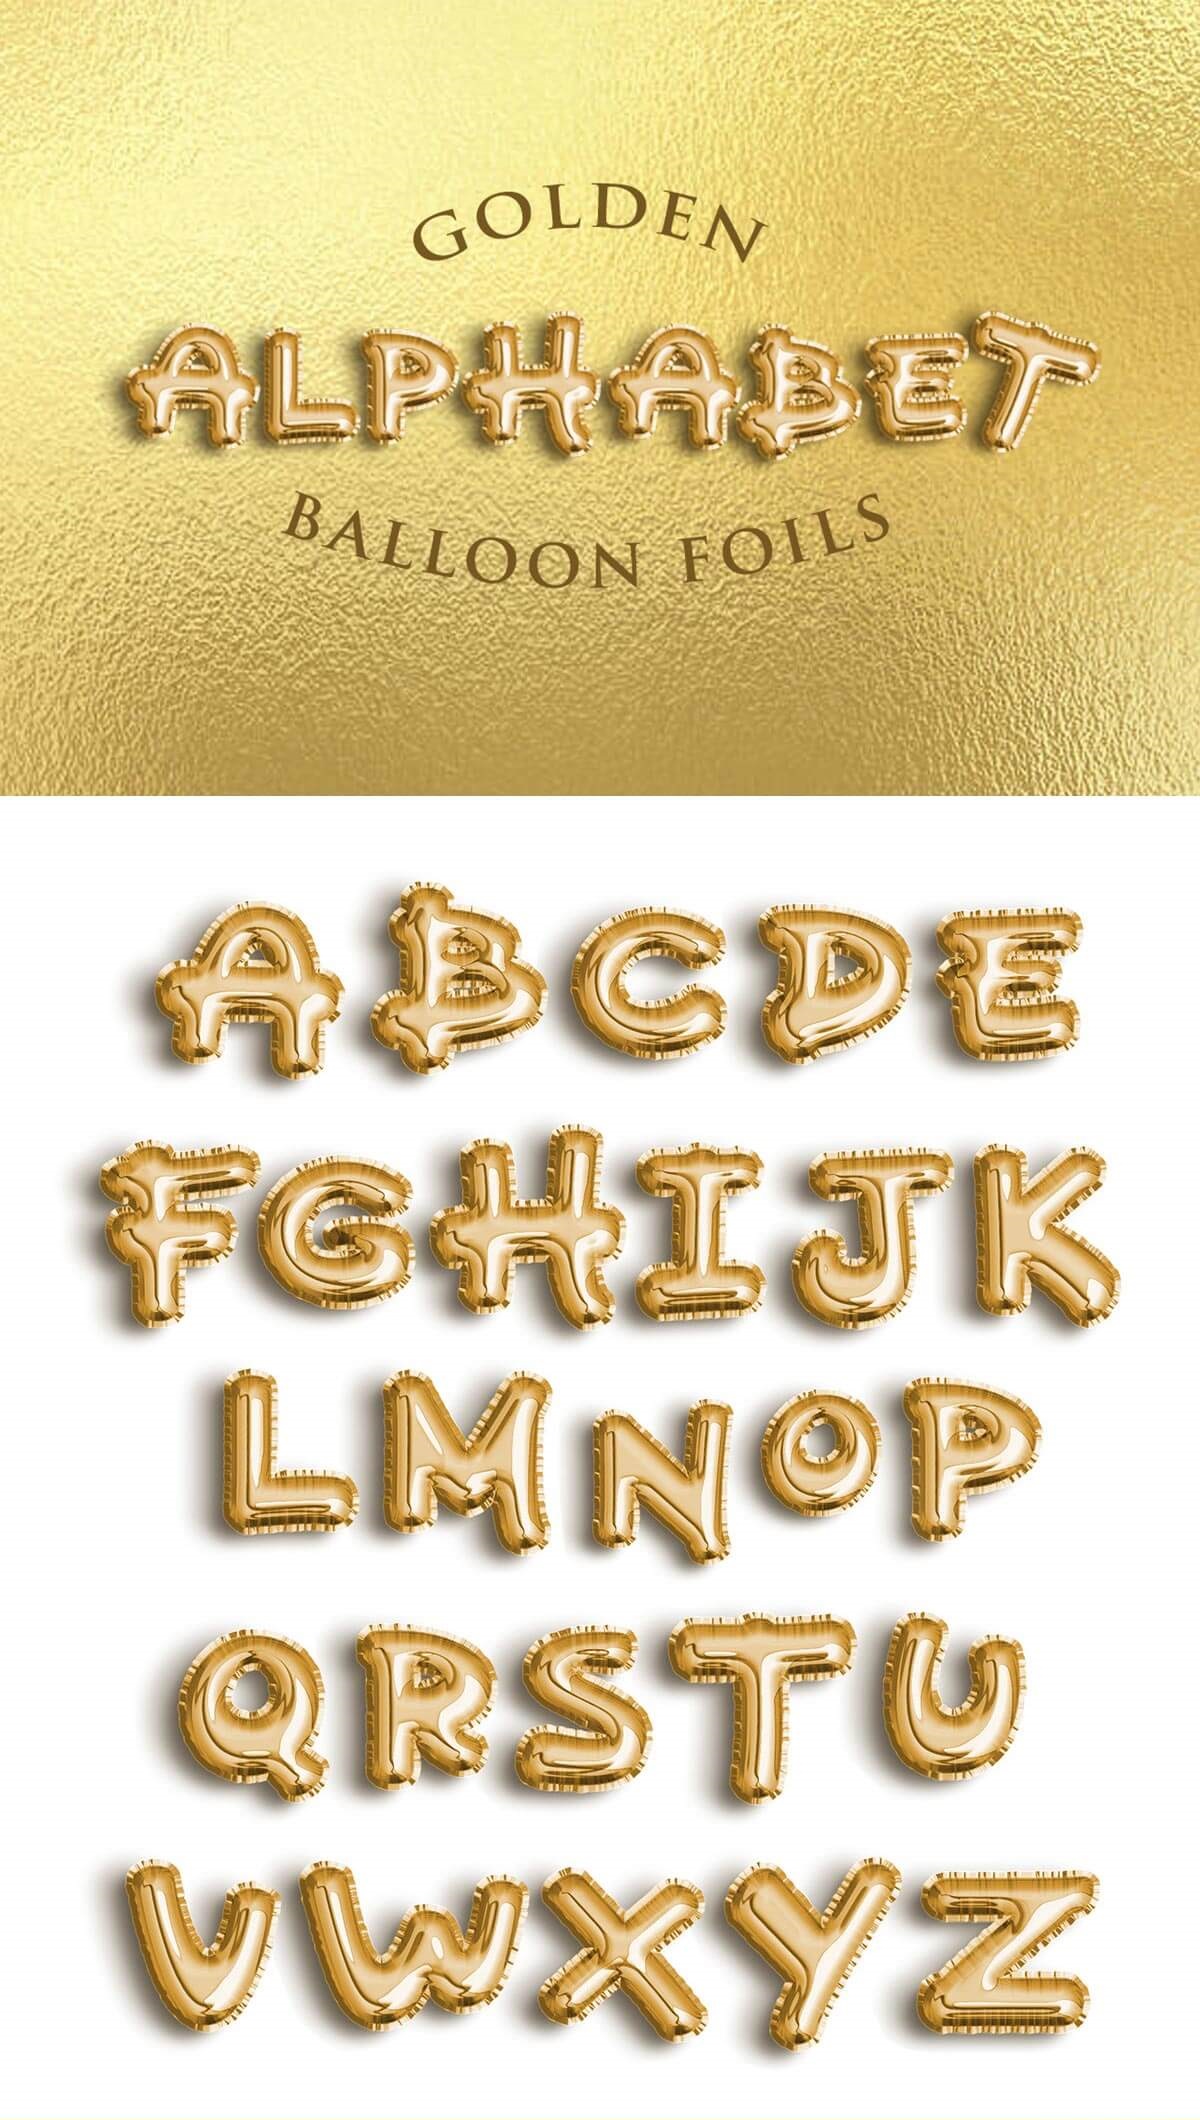 Free-Golden-Alphabet-Balloon-Foils-PSD-1.jpg